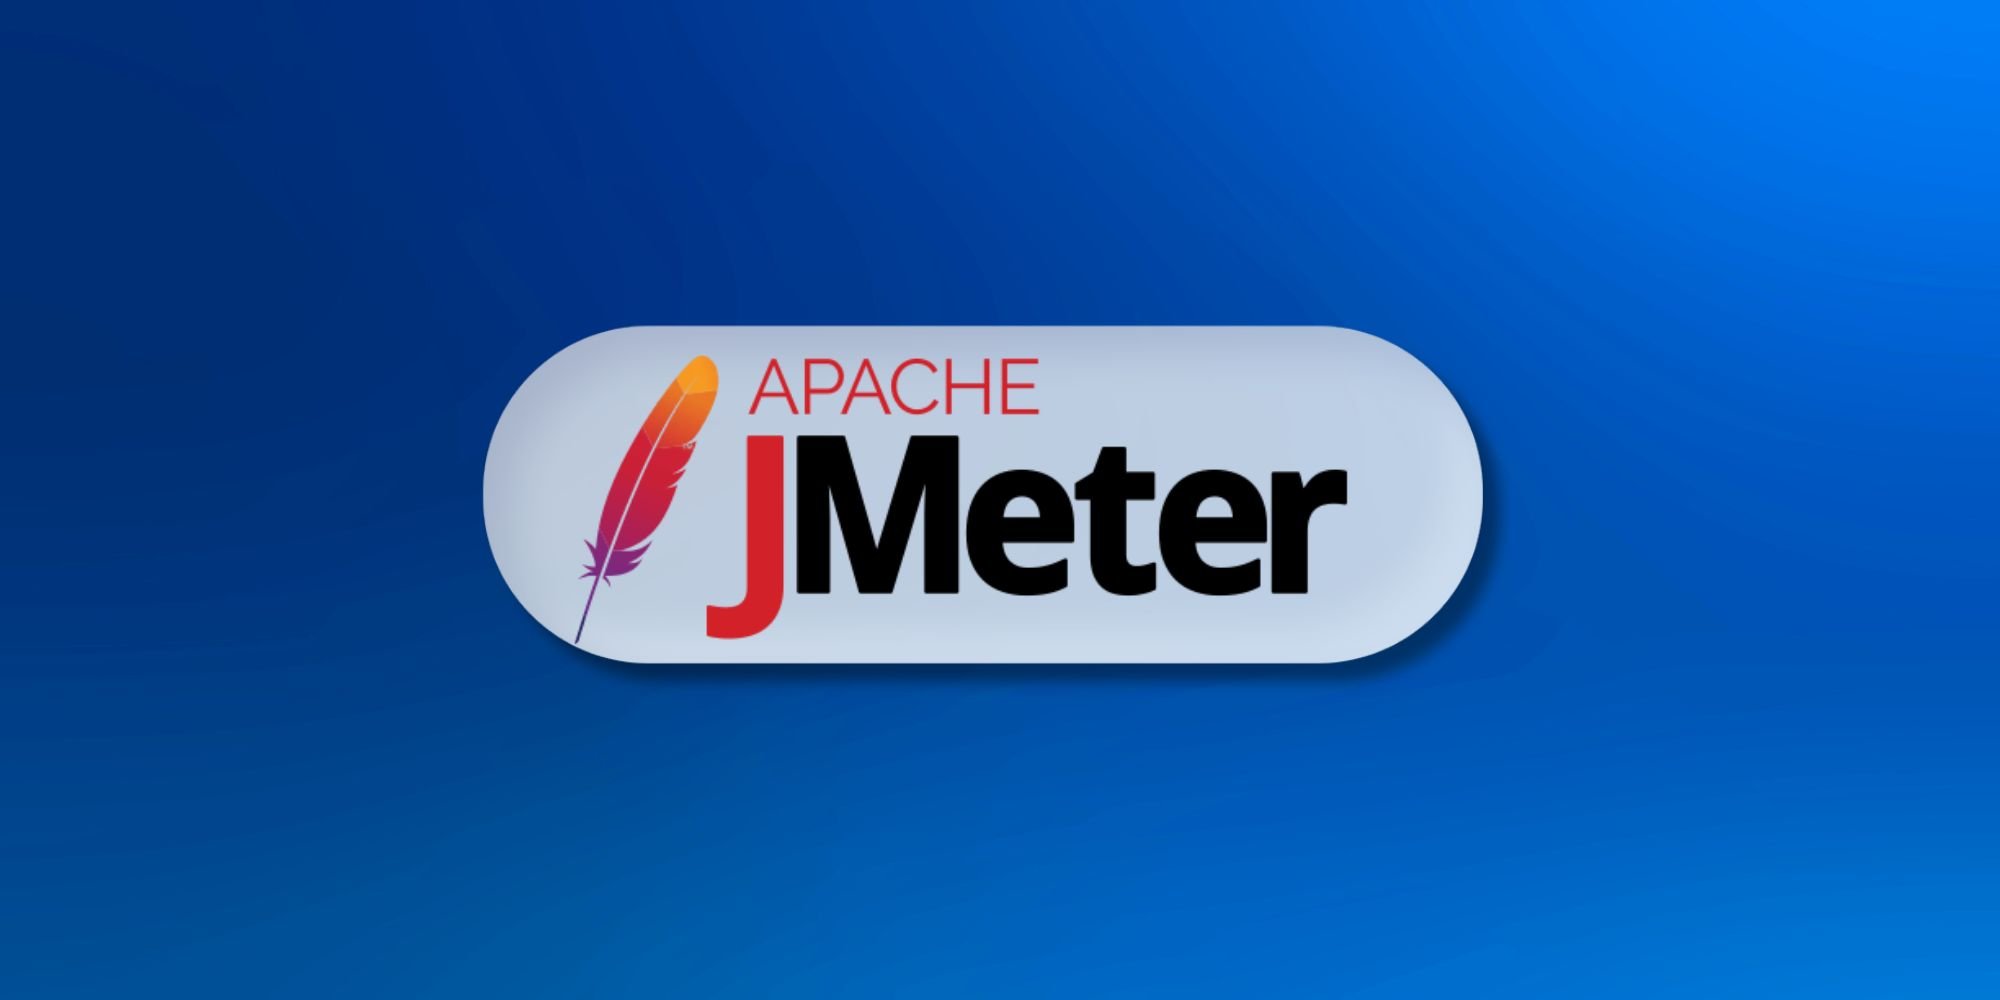 JMeter Training in Chandigarh